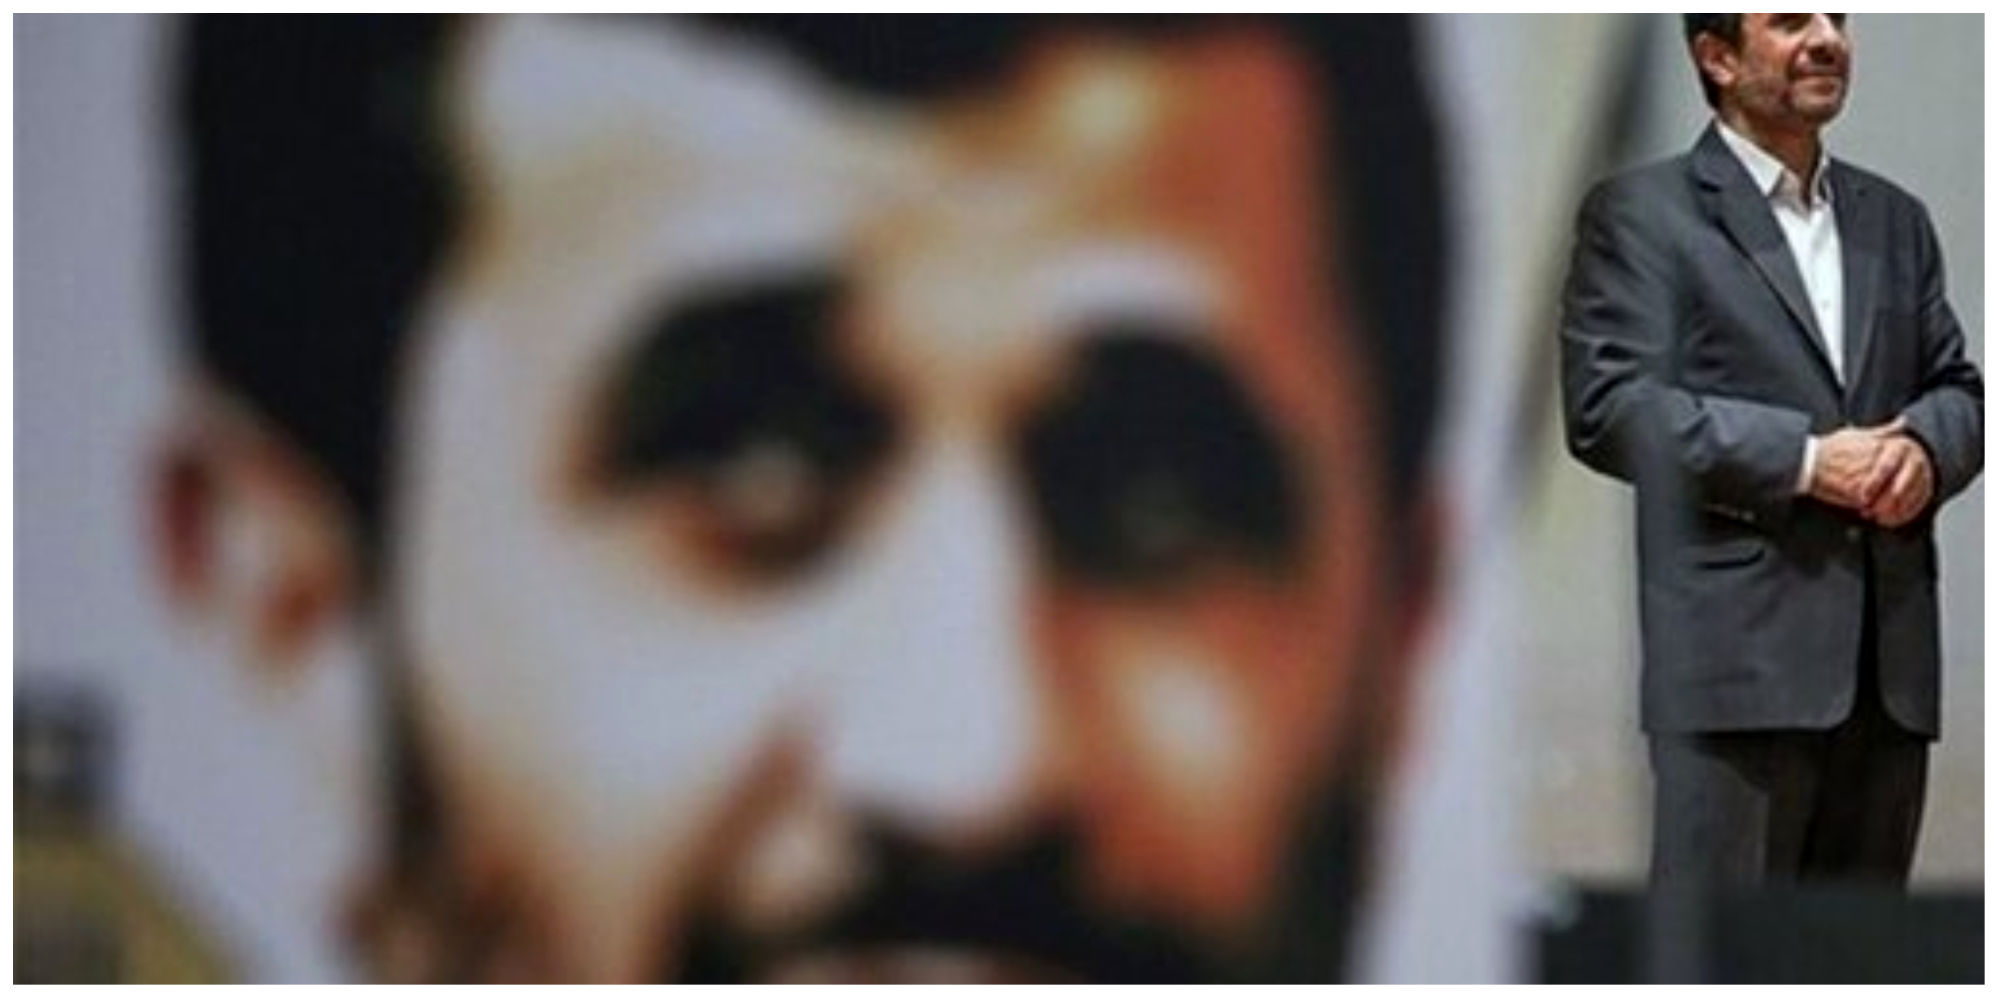 واکنش تند جوانفکر به یک اتهام علیه احمدی نژاد